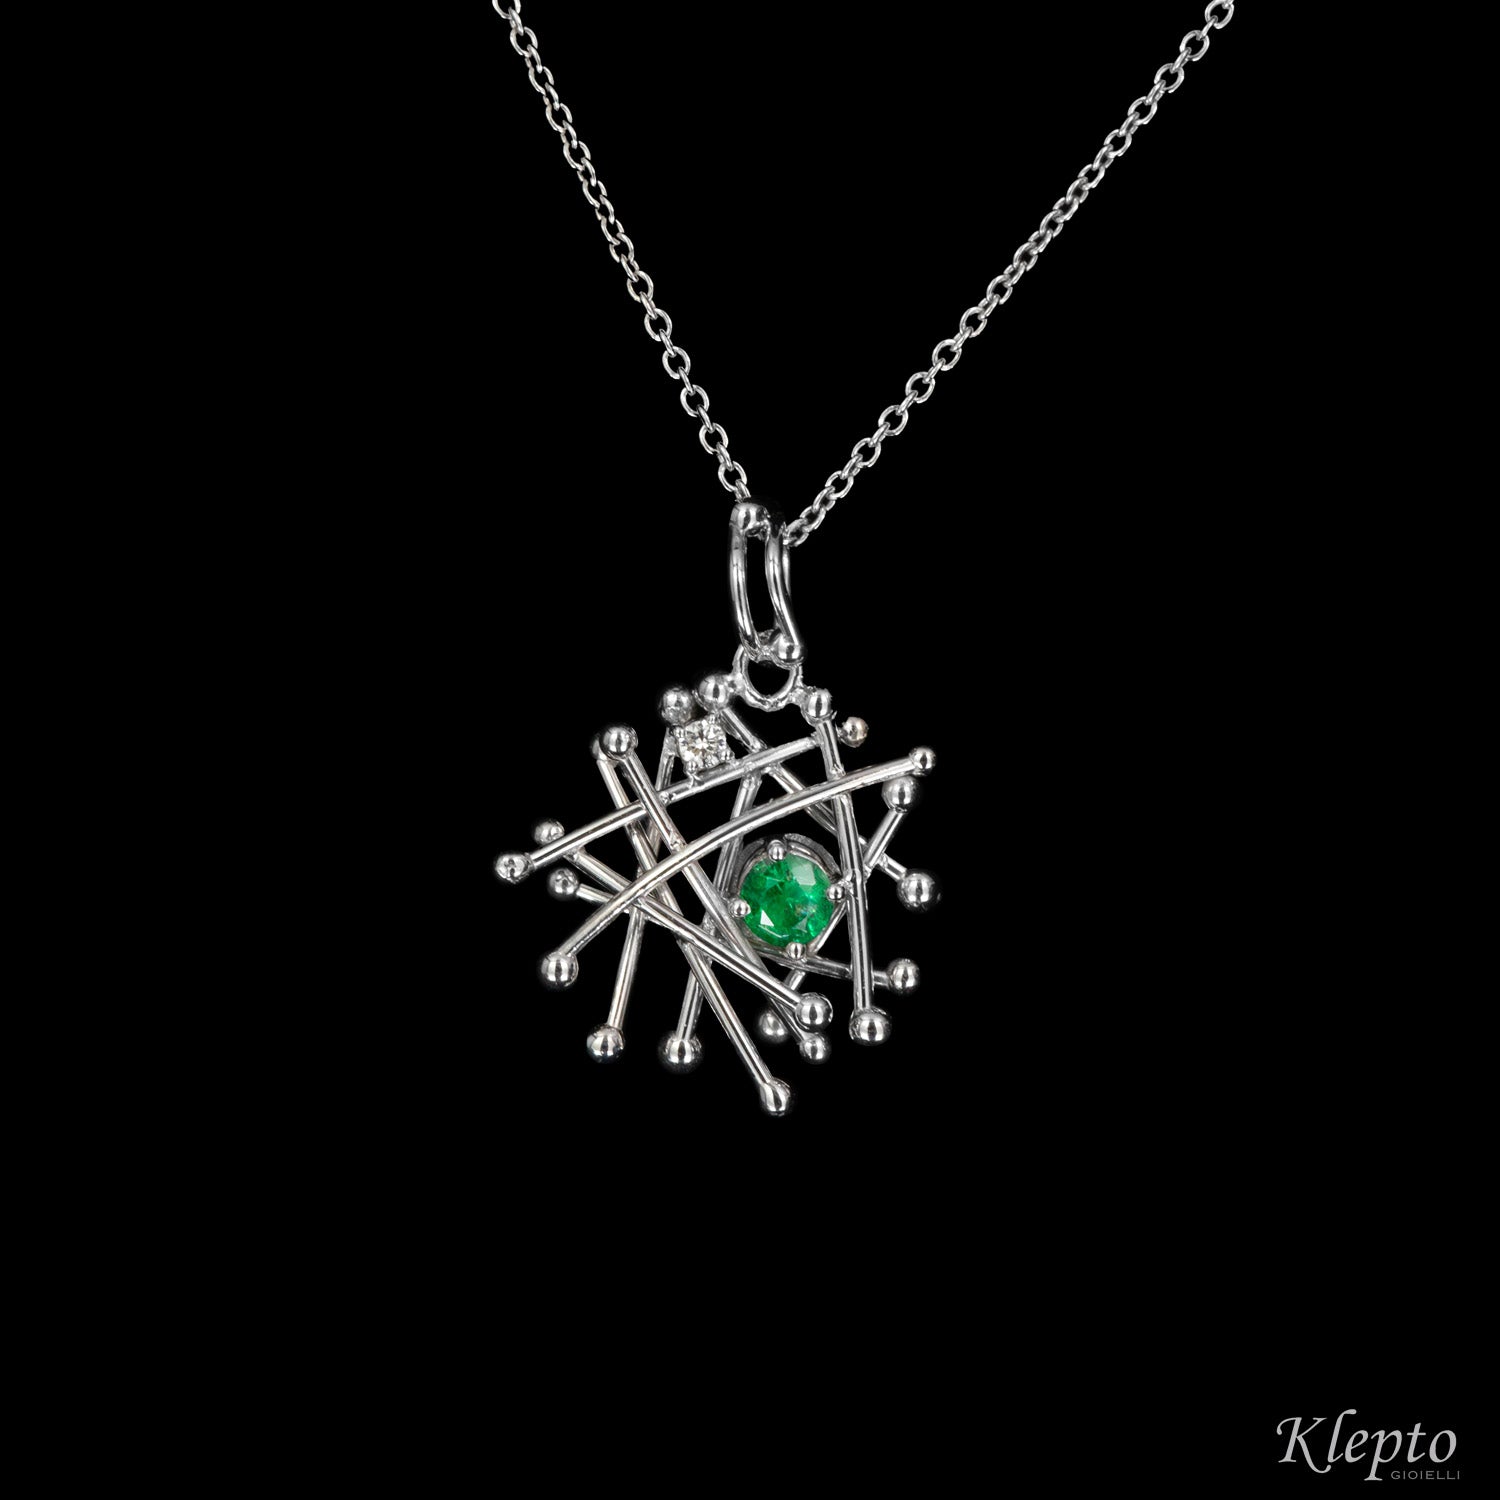 White gold "Fiammiferino" pendant with Emerald and Diamond